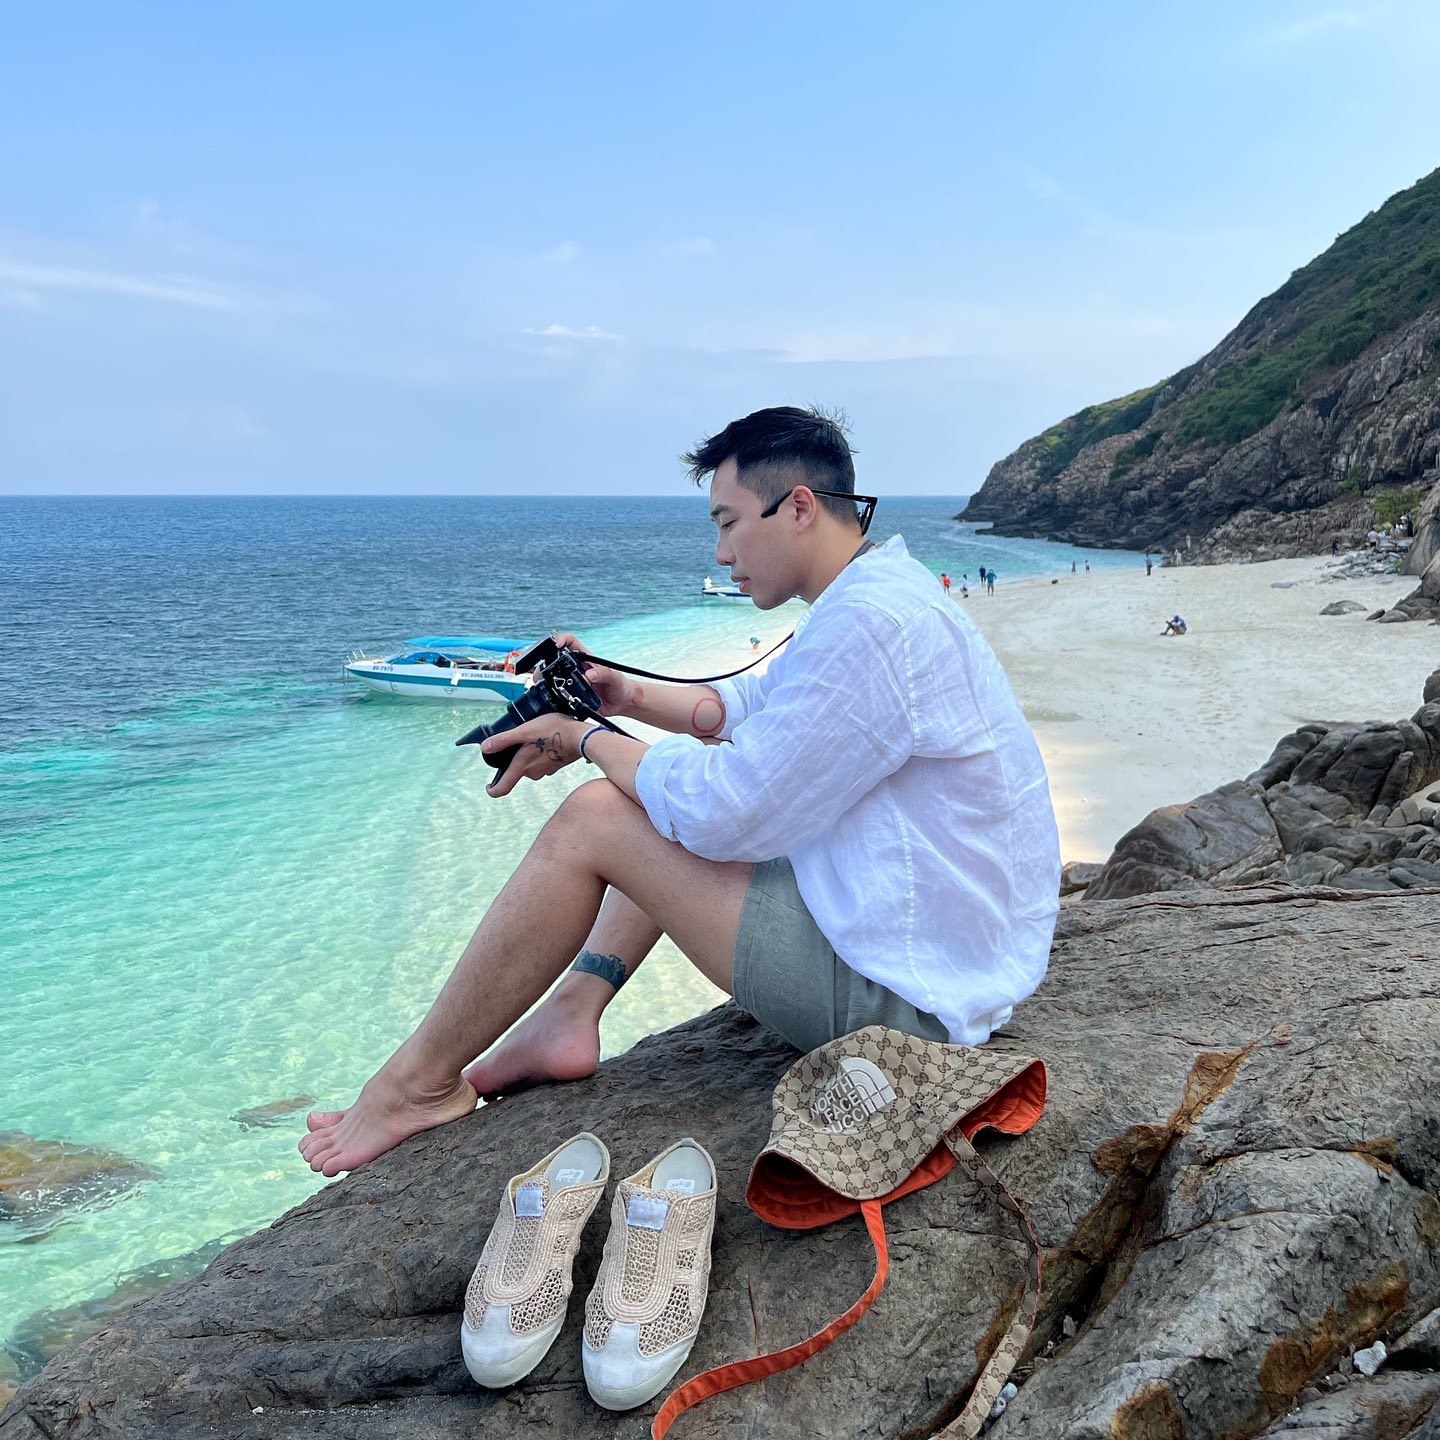 Cẩm nang chinh phục Côn Đảo - vùng biển hoang sơ bậc nhất Việt Nam: Nước xanh trong như Maldives, chỗ check-in nhiều vô số kể - Ảnh 3.